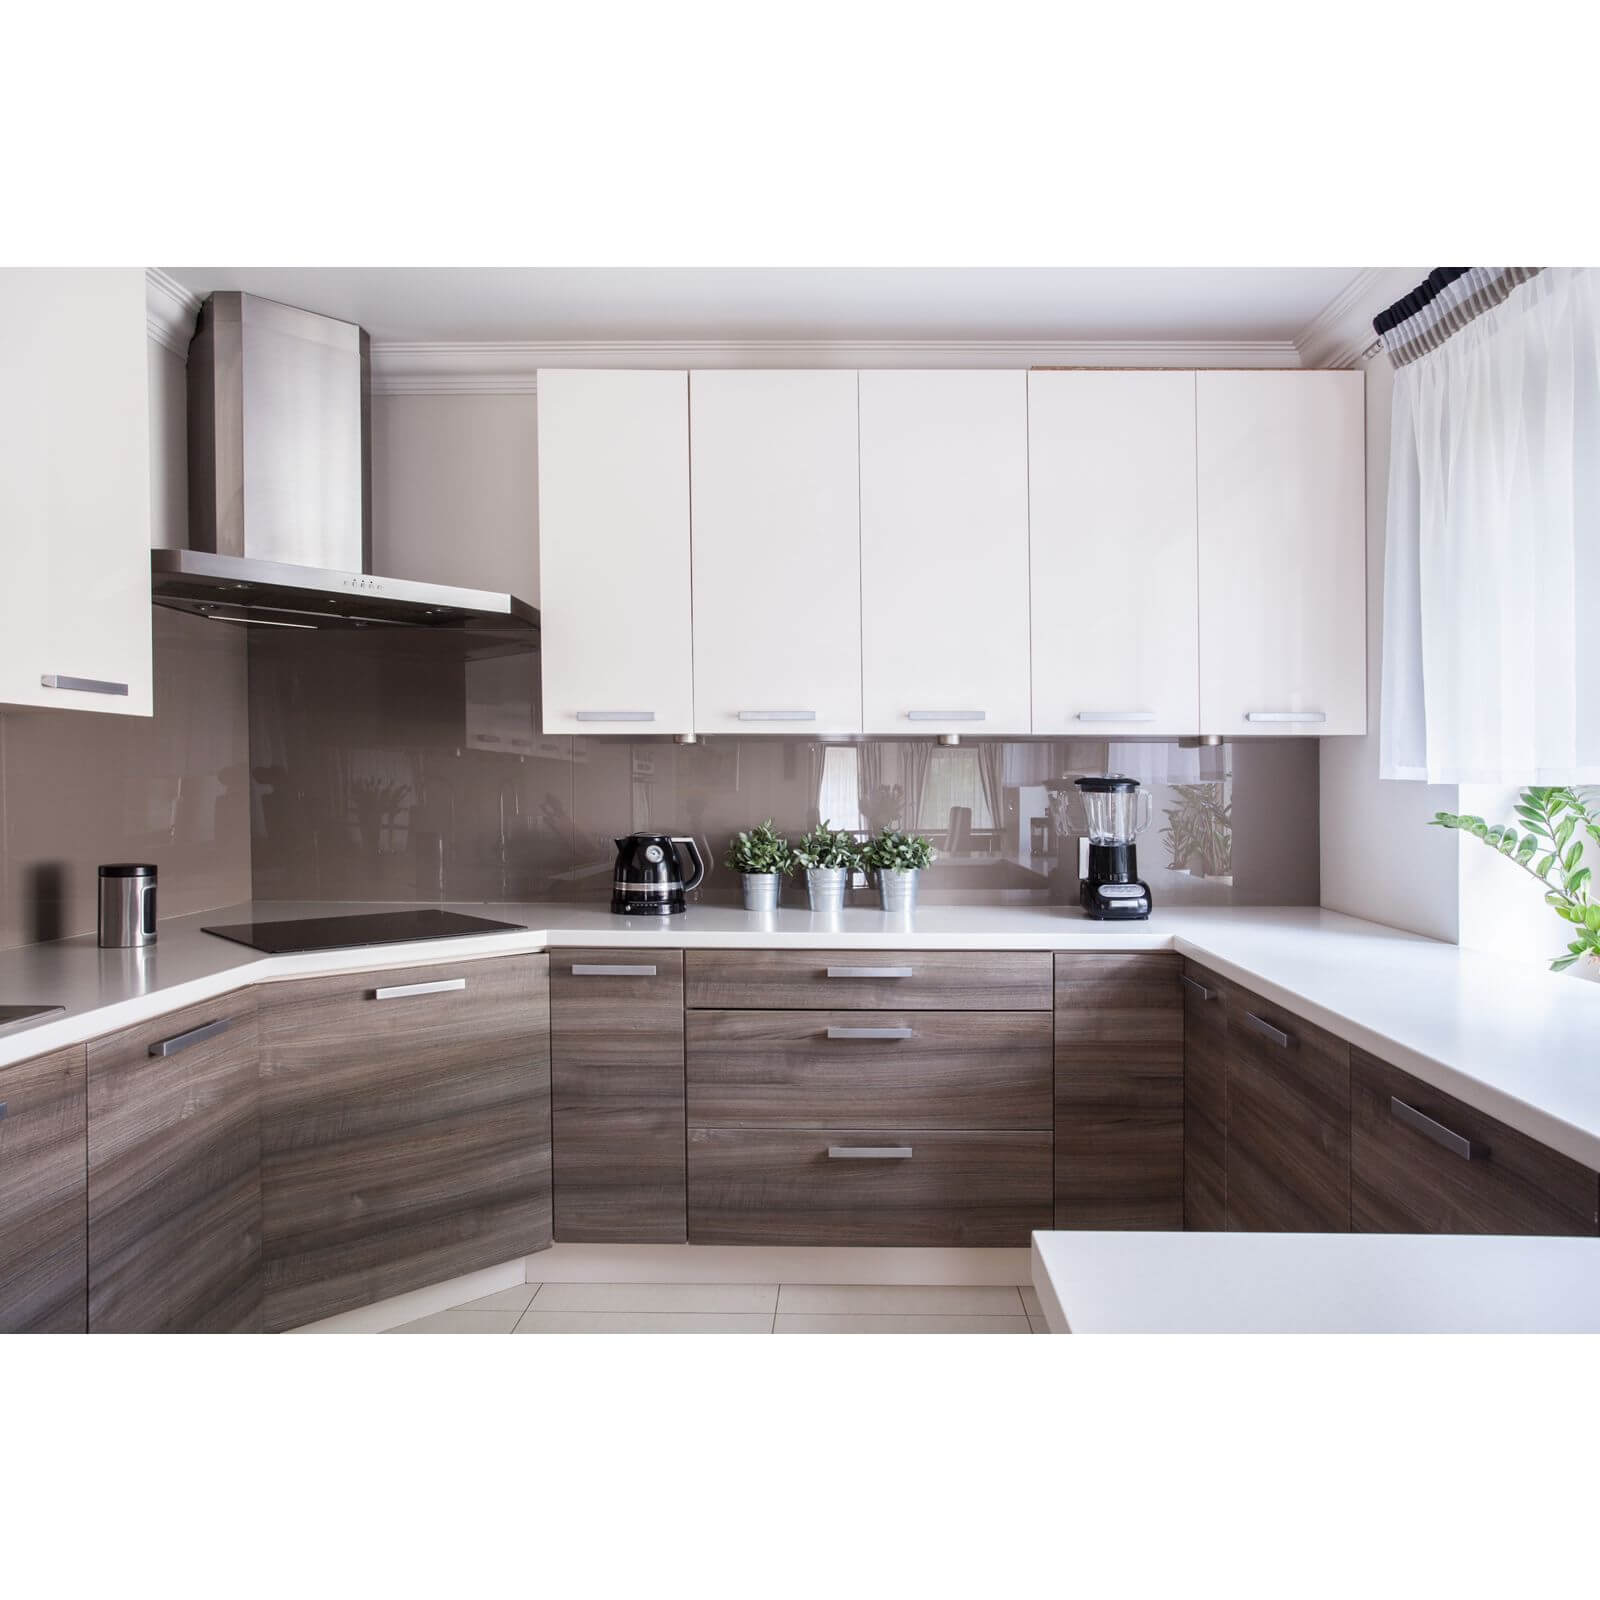 Zenolite Acrylic Kitchen Splashback Panel - 760 x 700mm - Mocha